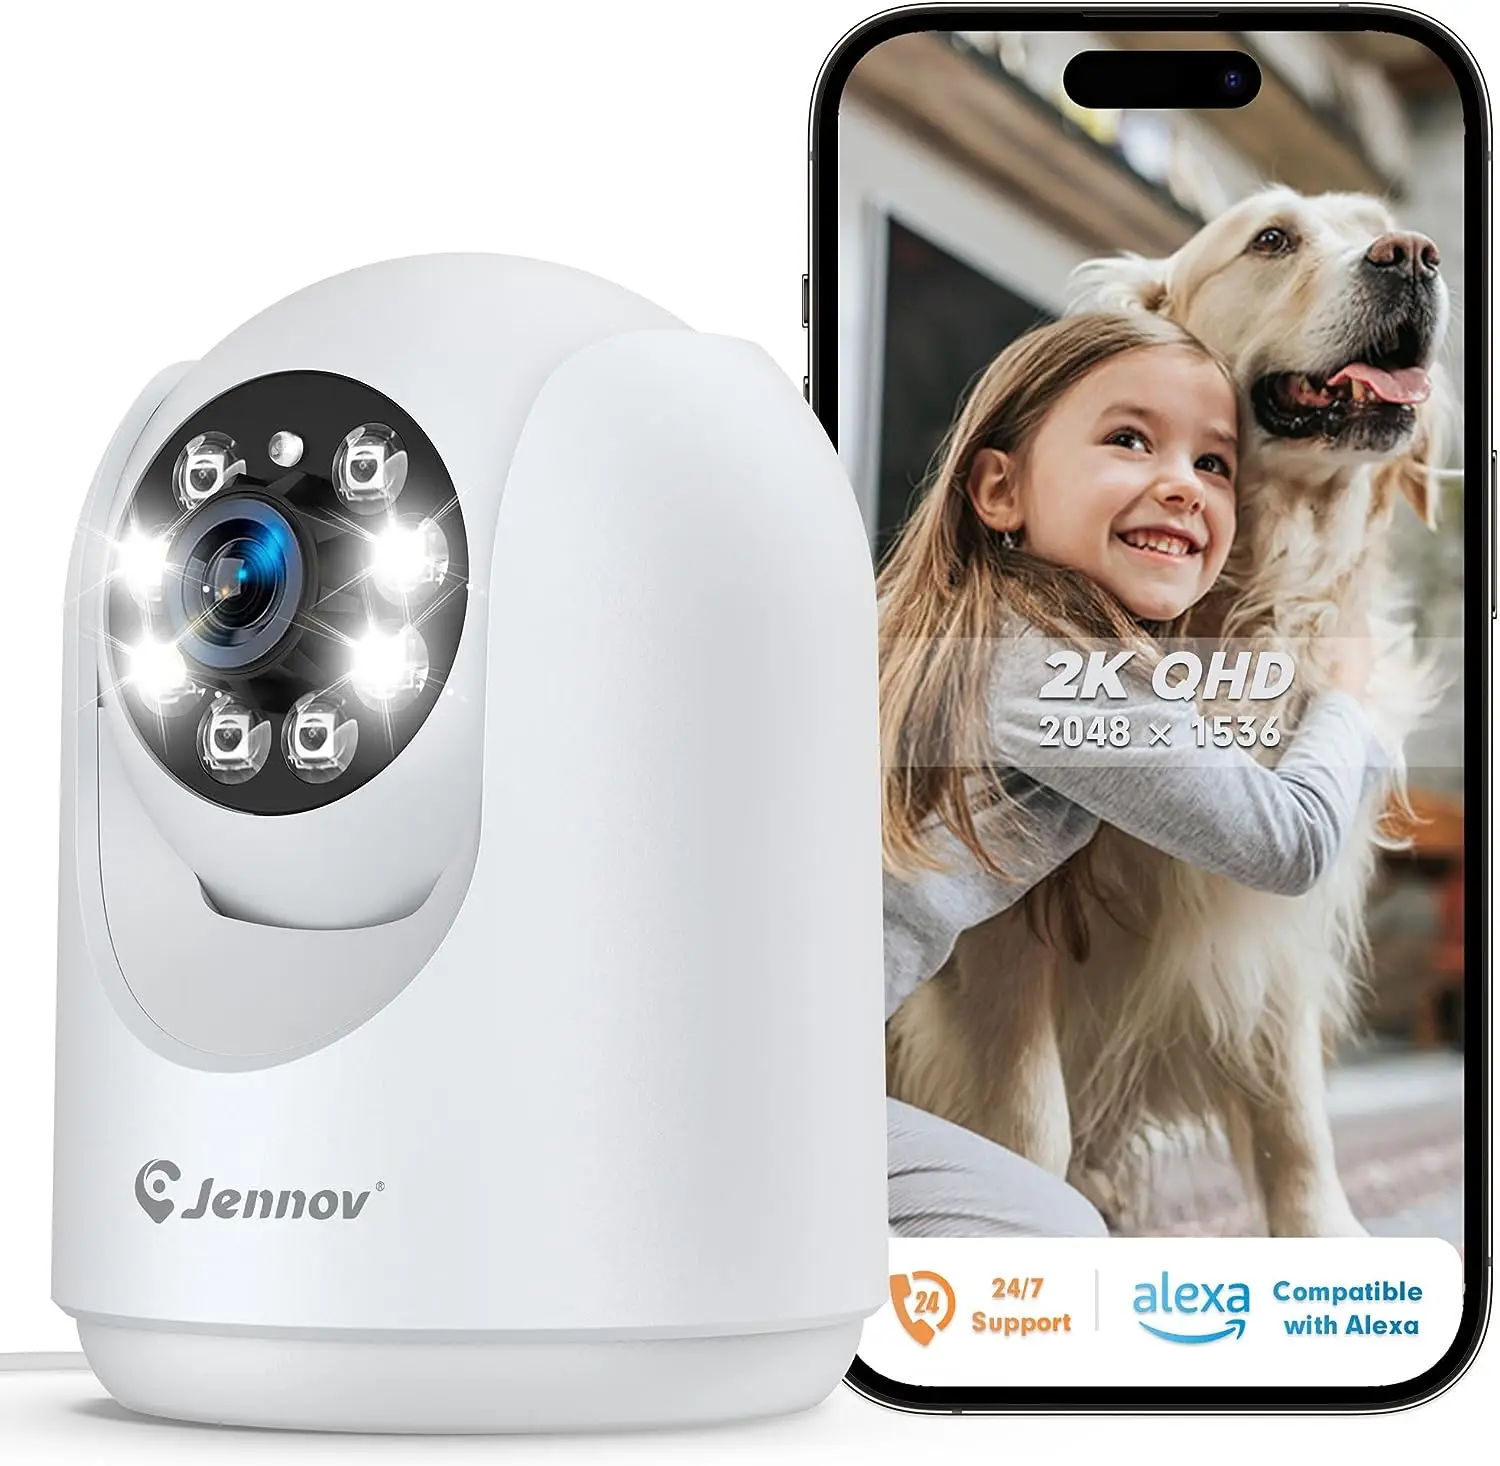 Безжична камера Einnov 2K Security WiFi Pan & Tilt за дома, дете/домашен любимец, 2.4 Ghz, Автоматично проследяване, Детекция на движение, Цвят на нощ0